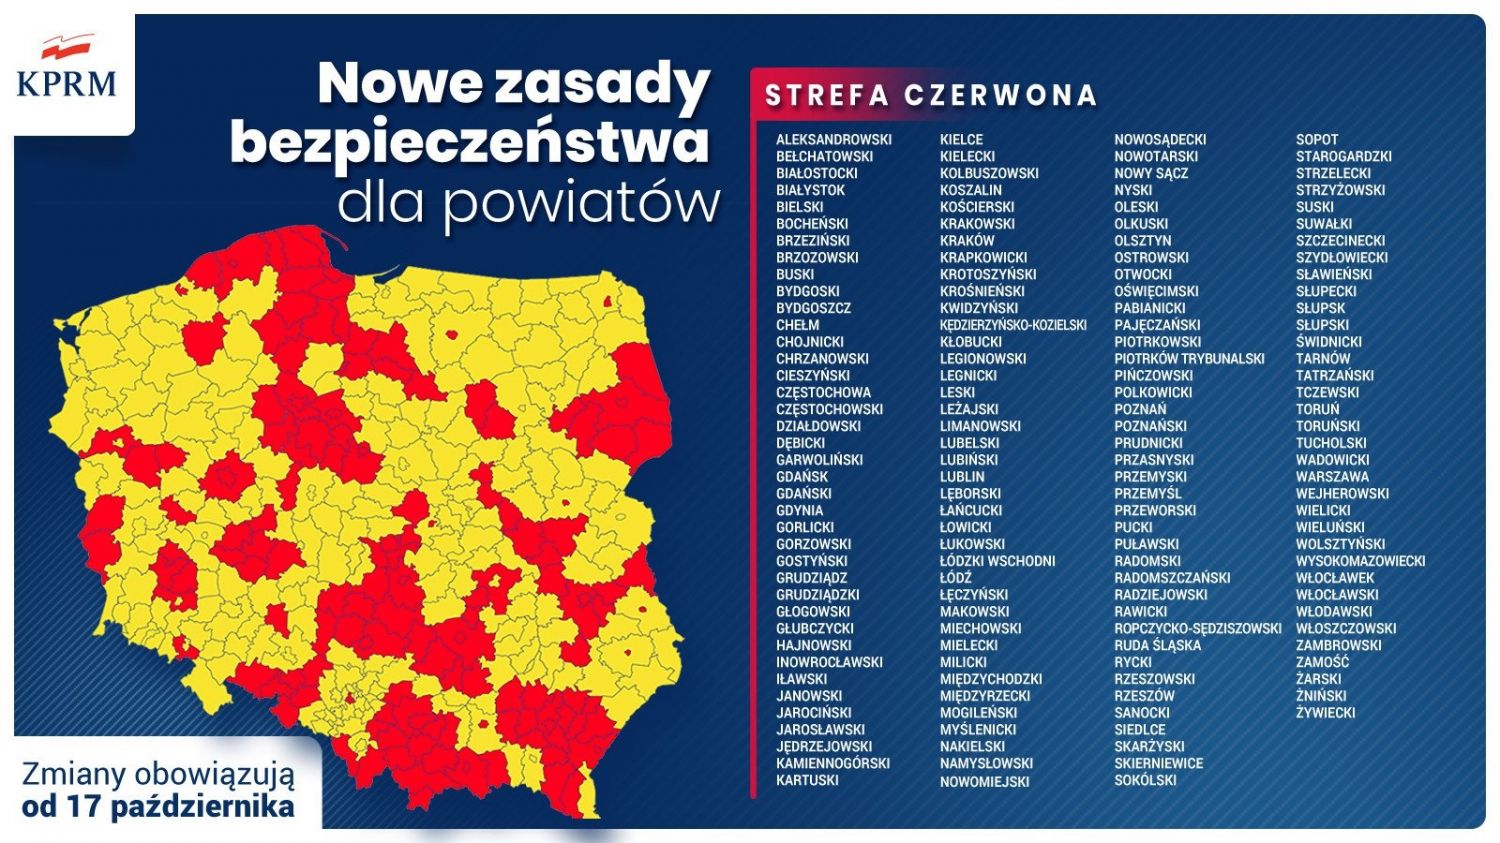 Grafika przedstawiająca mapę Polski z zaznaczonymi strefami żółtymi i czerwonymi